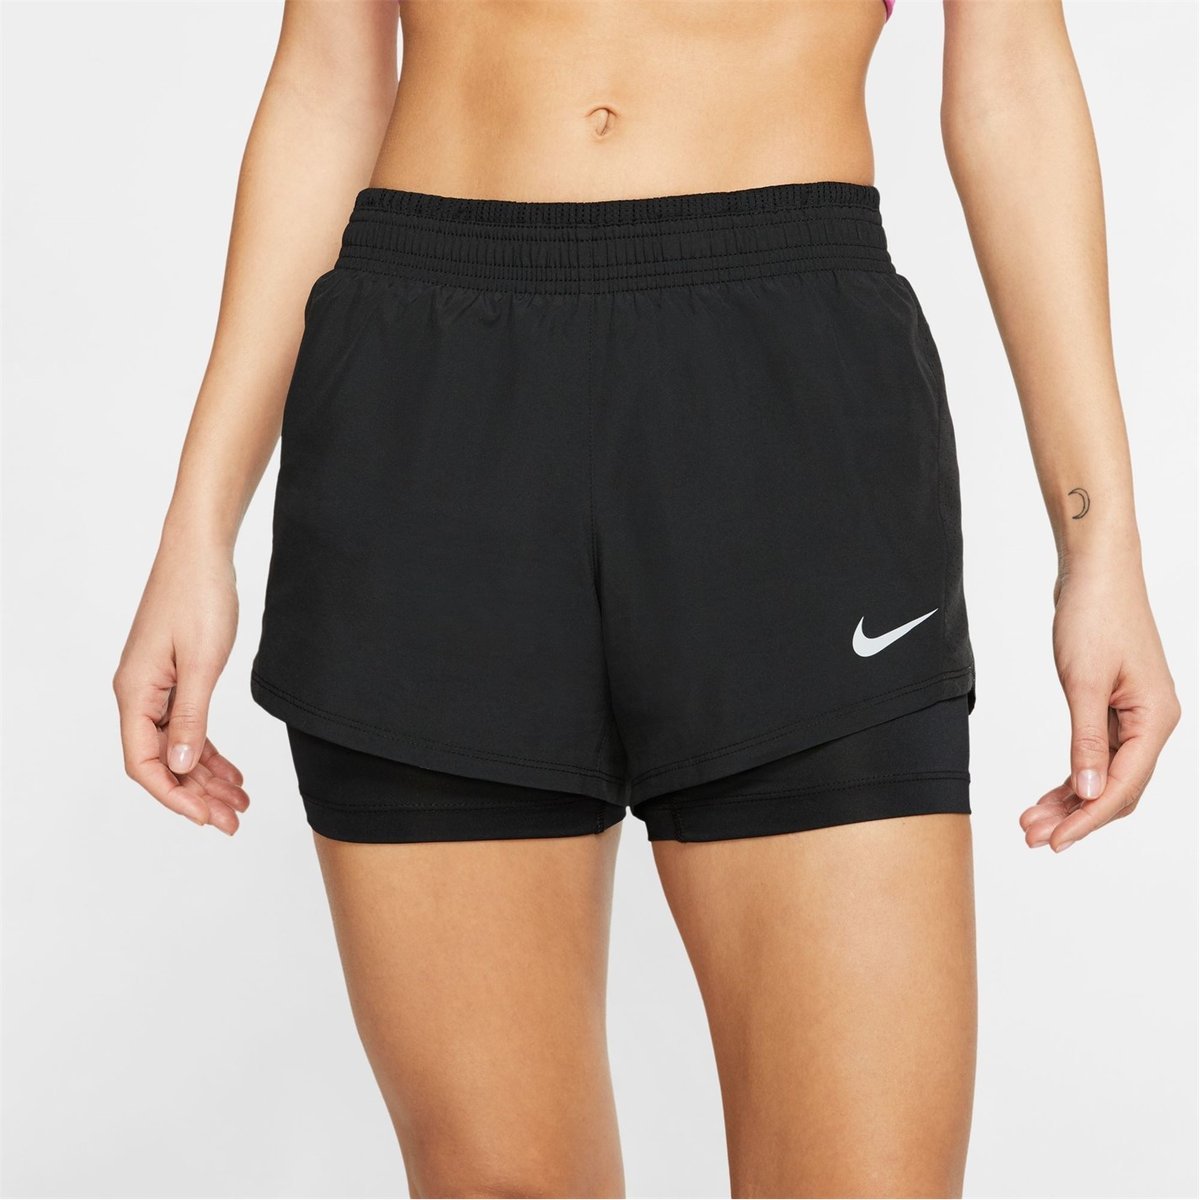 Nike Girls 10K Running Short Running Shorts Cool Grey Small 